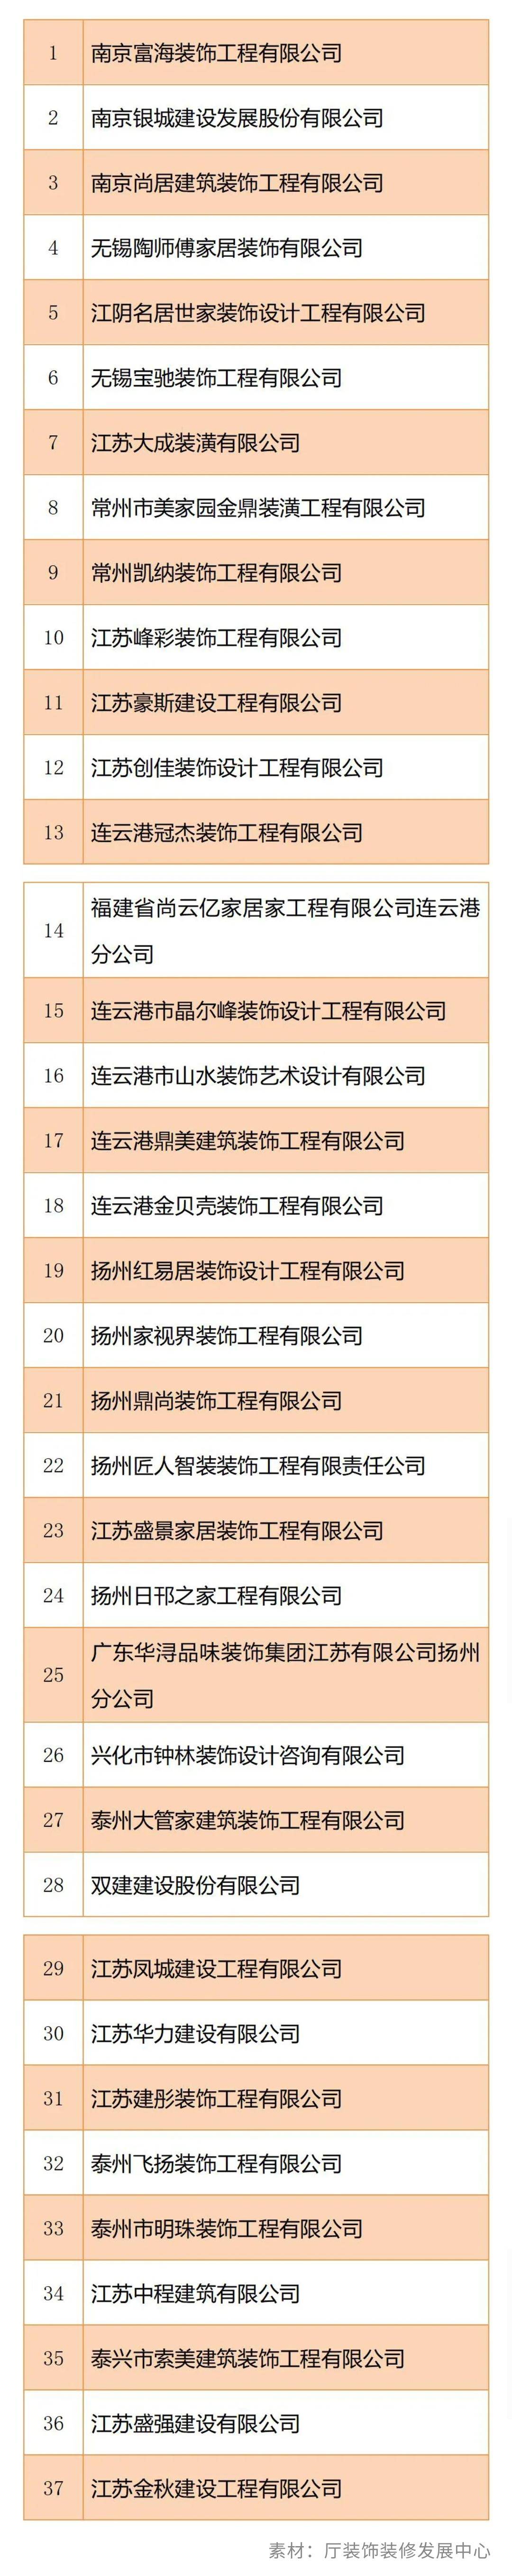 江苏省住宅装修放心消费示范企业名单-中国网地产